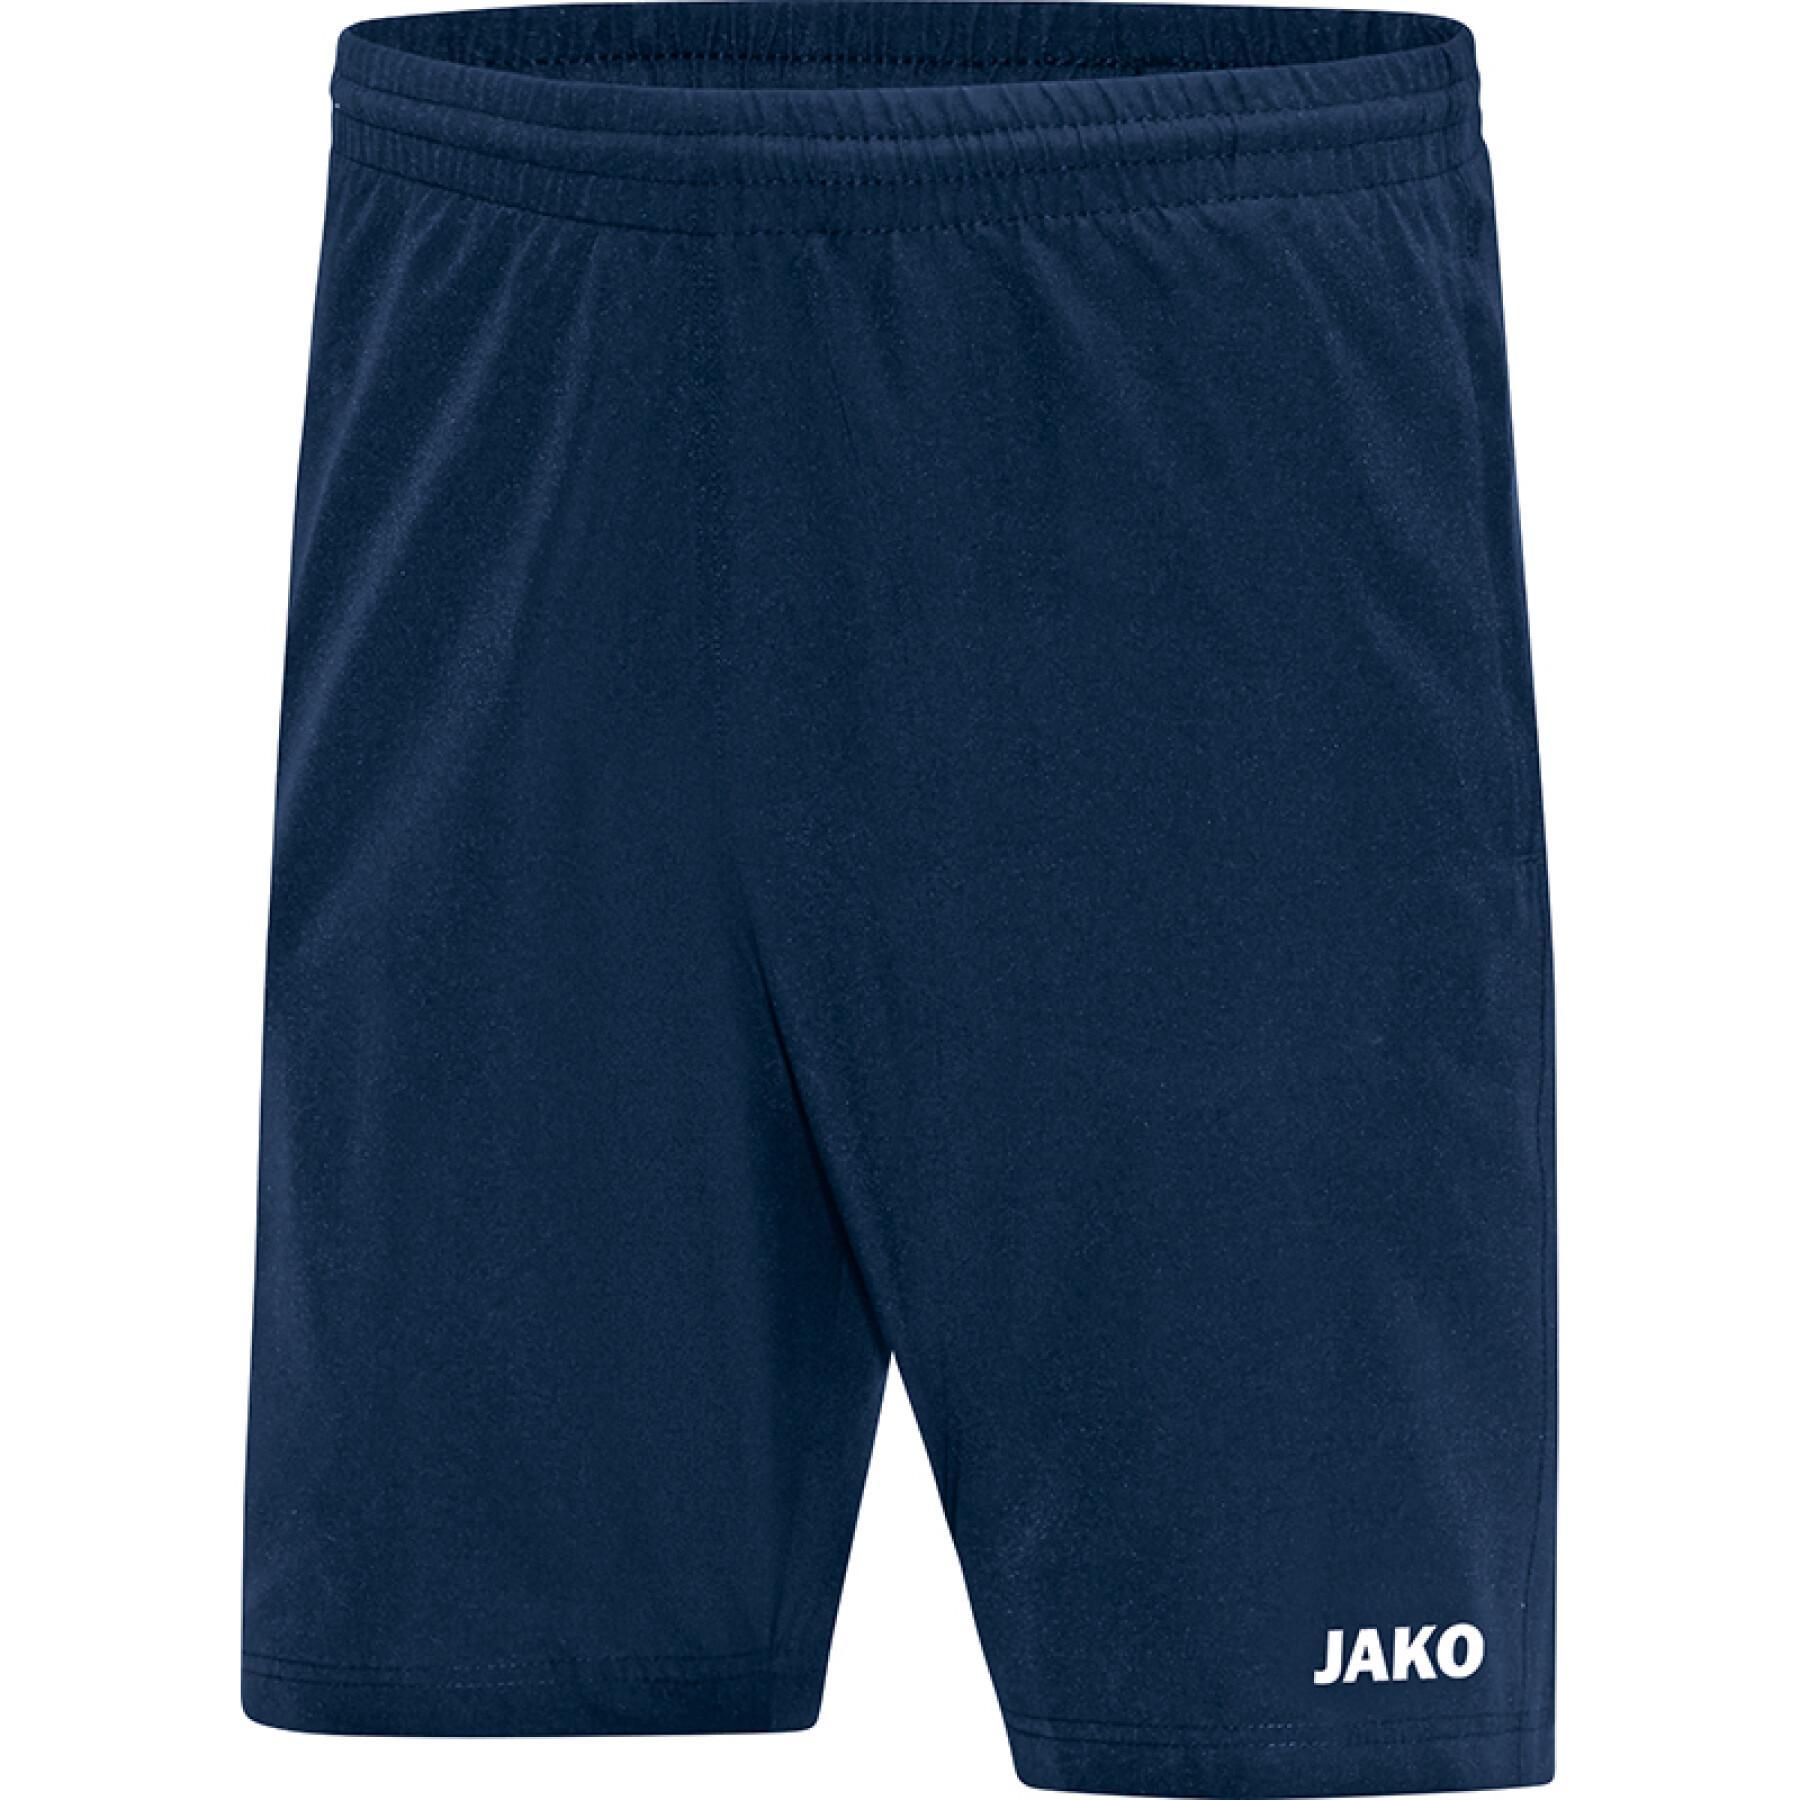 Women's shorts Jako Profi